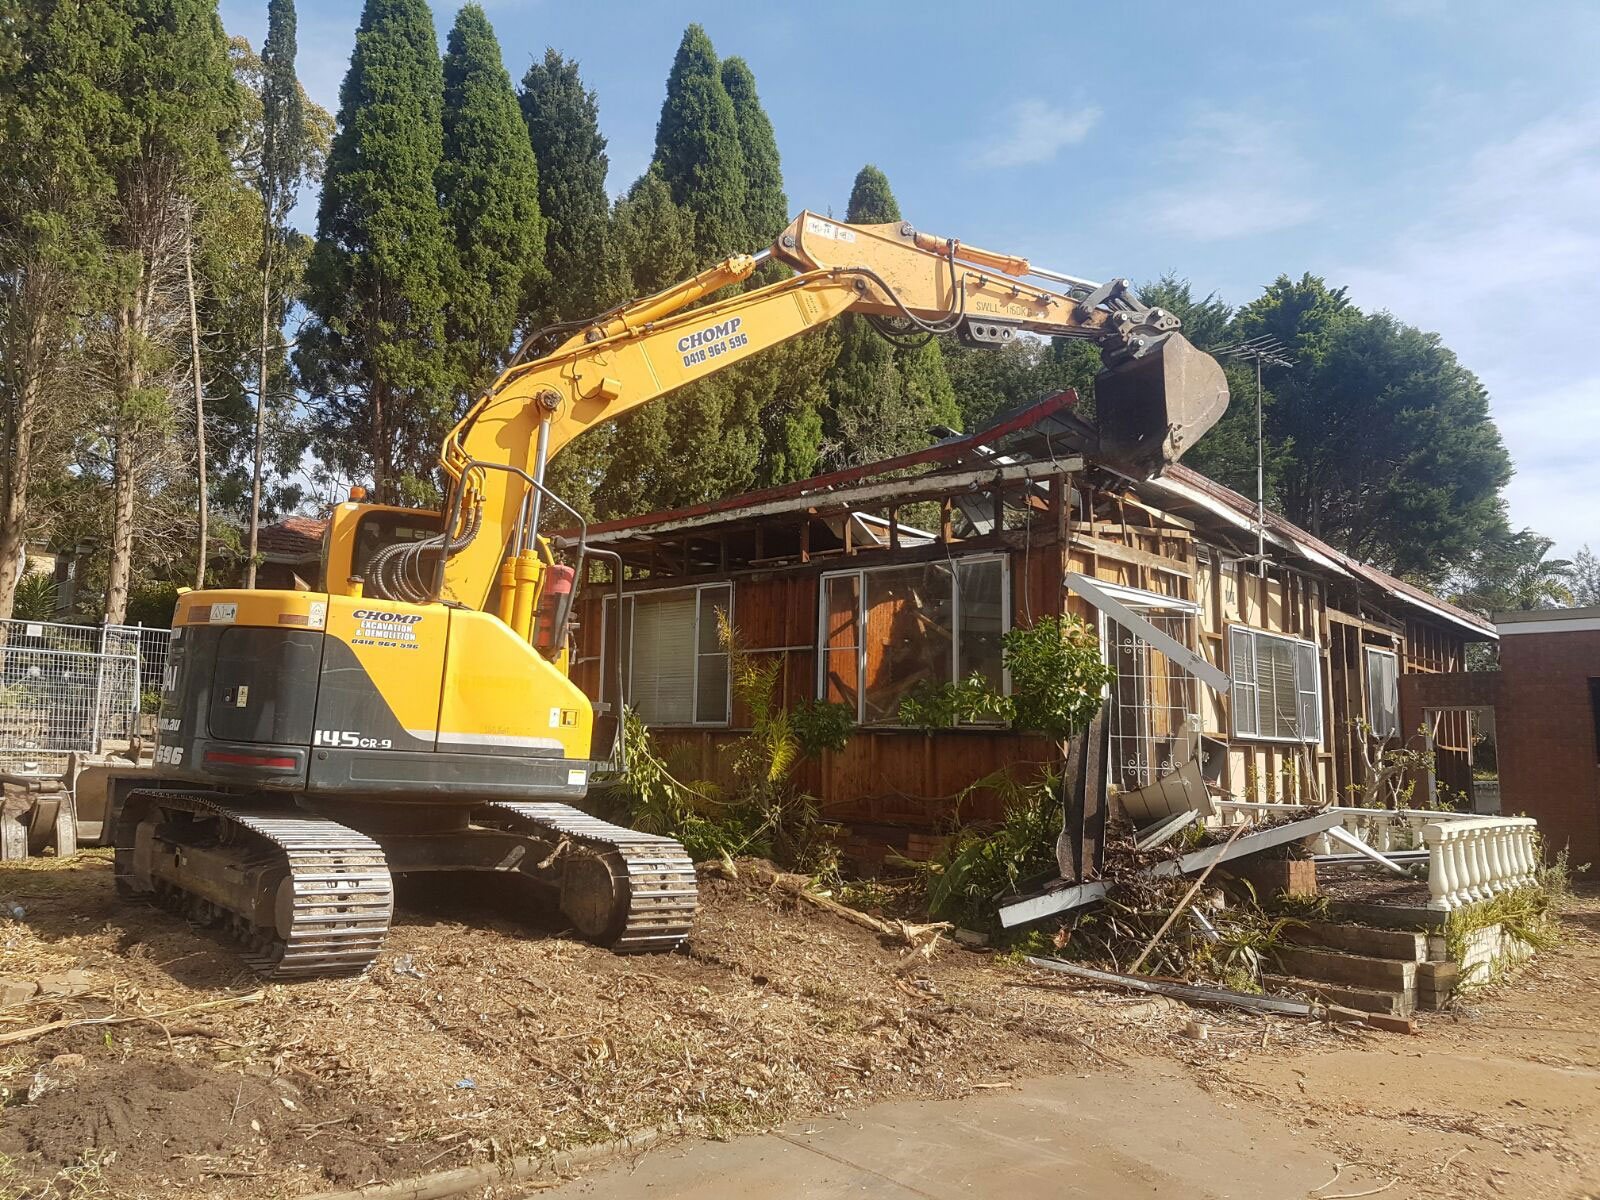 Residential Demolition Chomp Excavation & Demolition